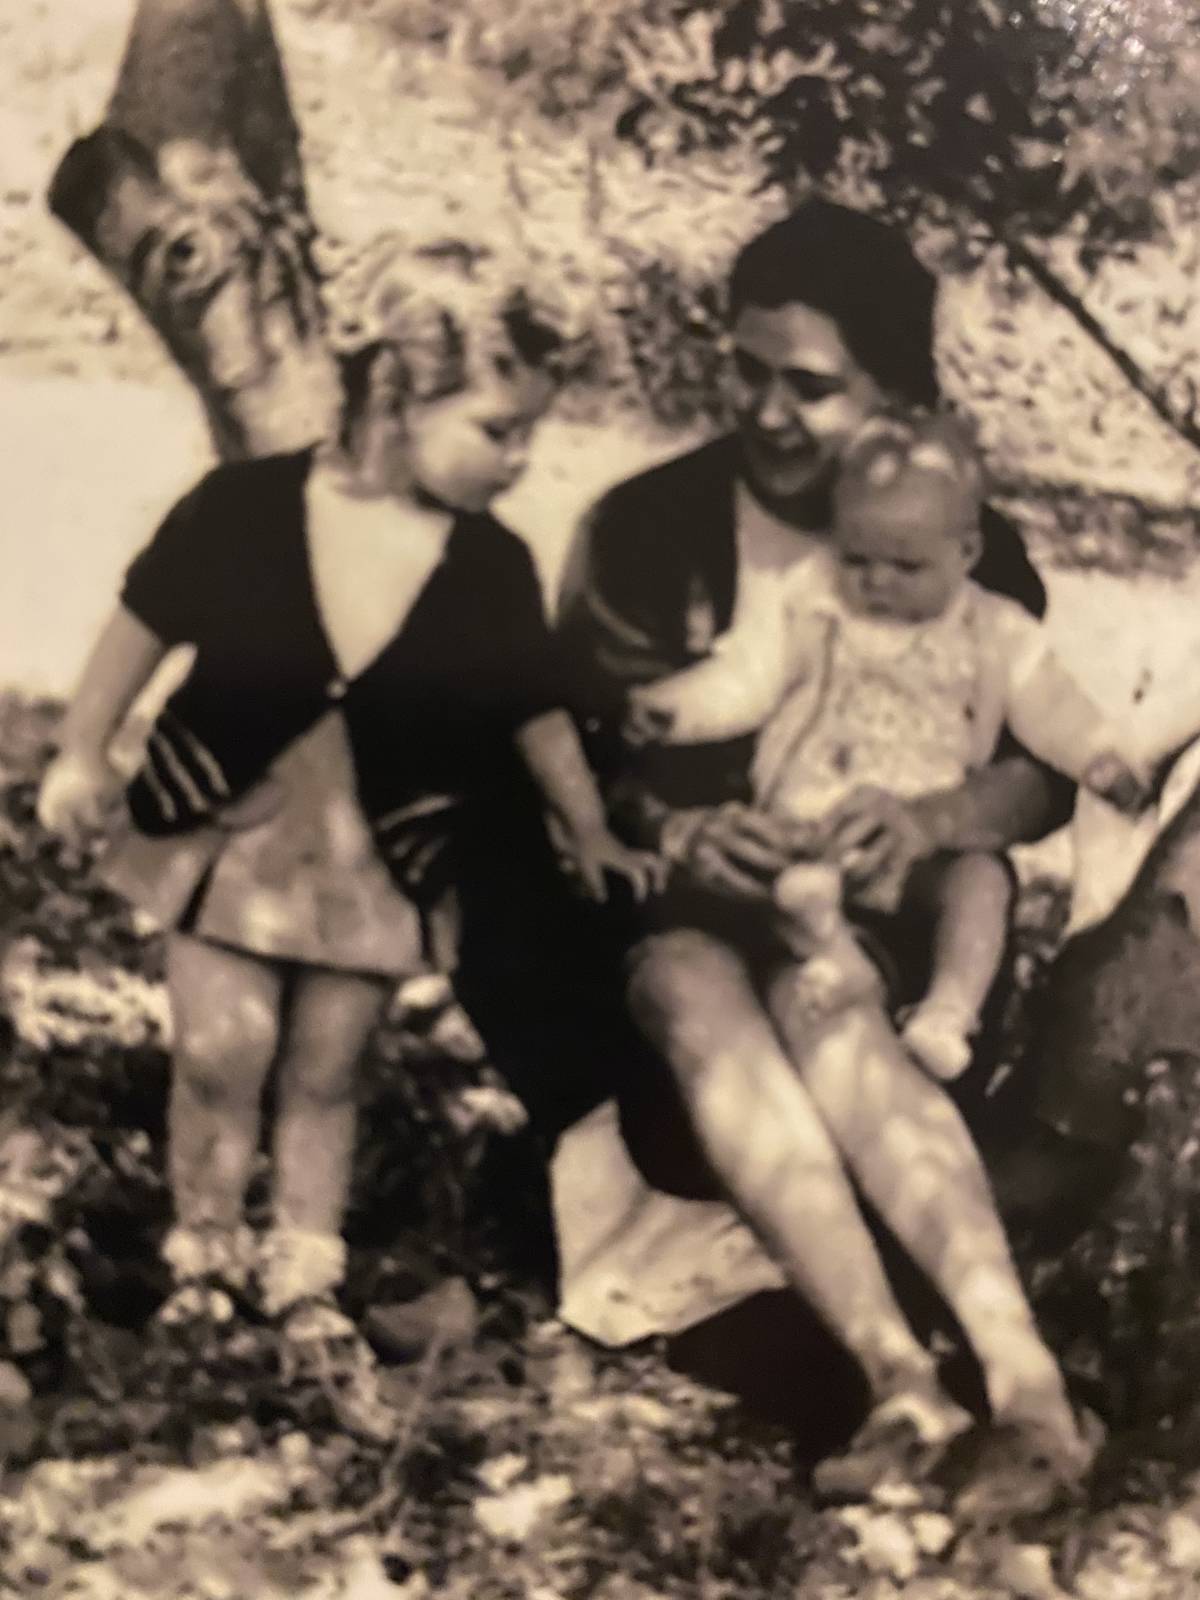 Mª Emilia Adán de niña junto a su madre y hermano